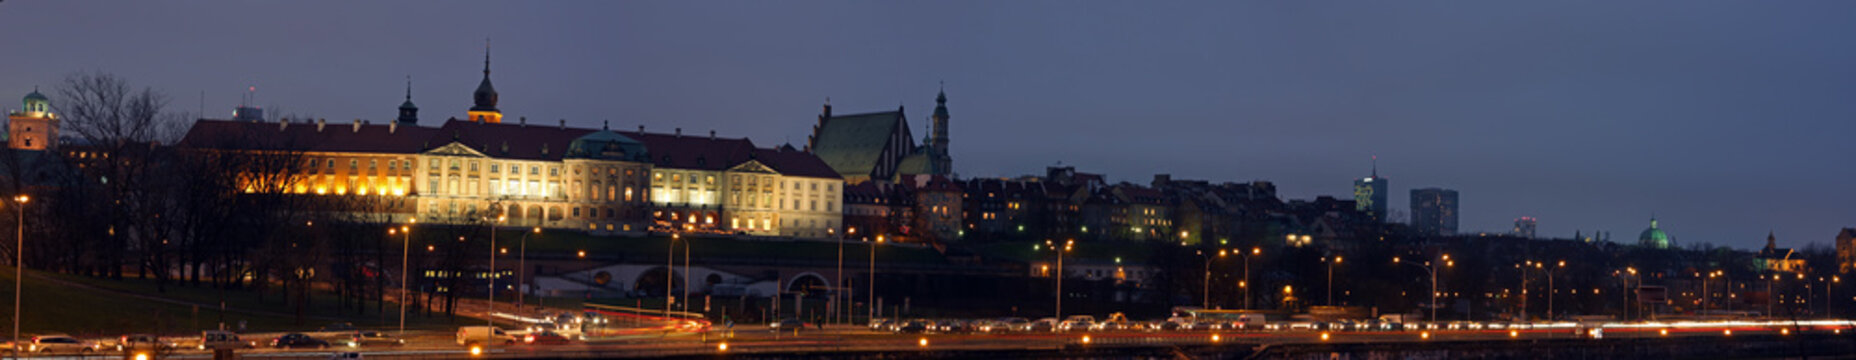 Fototapeta Warsaw at night